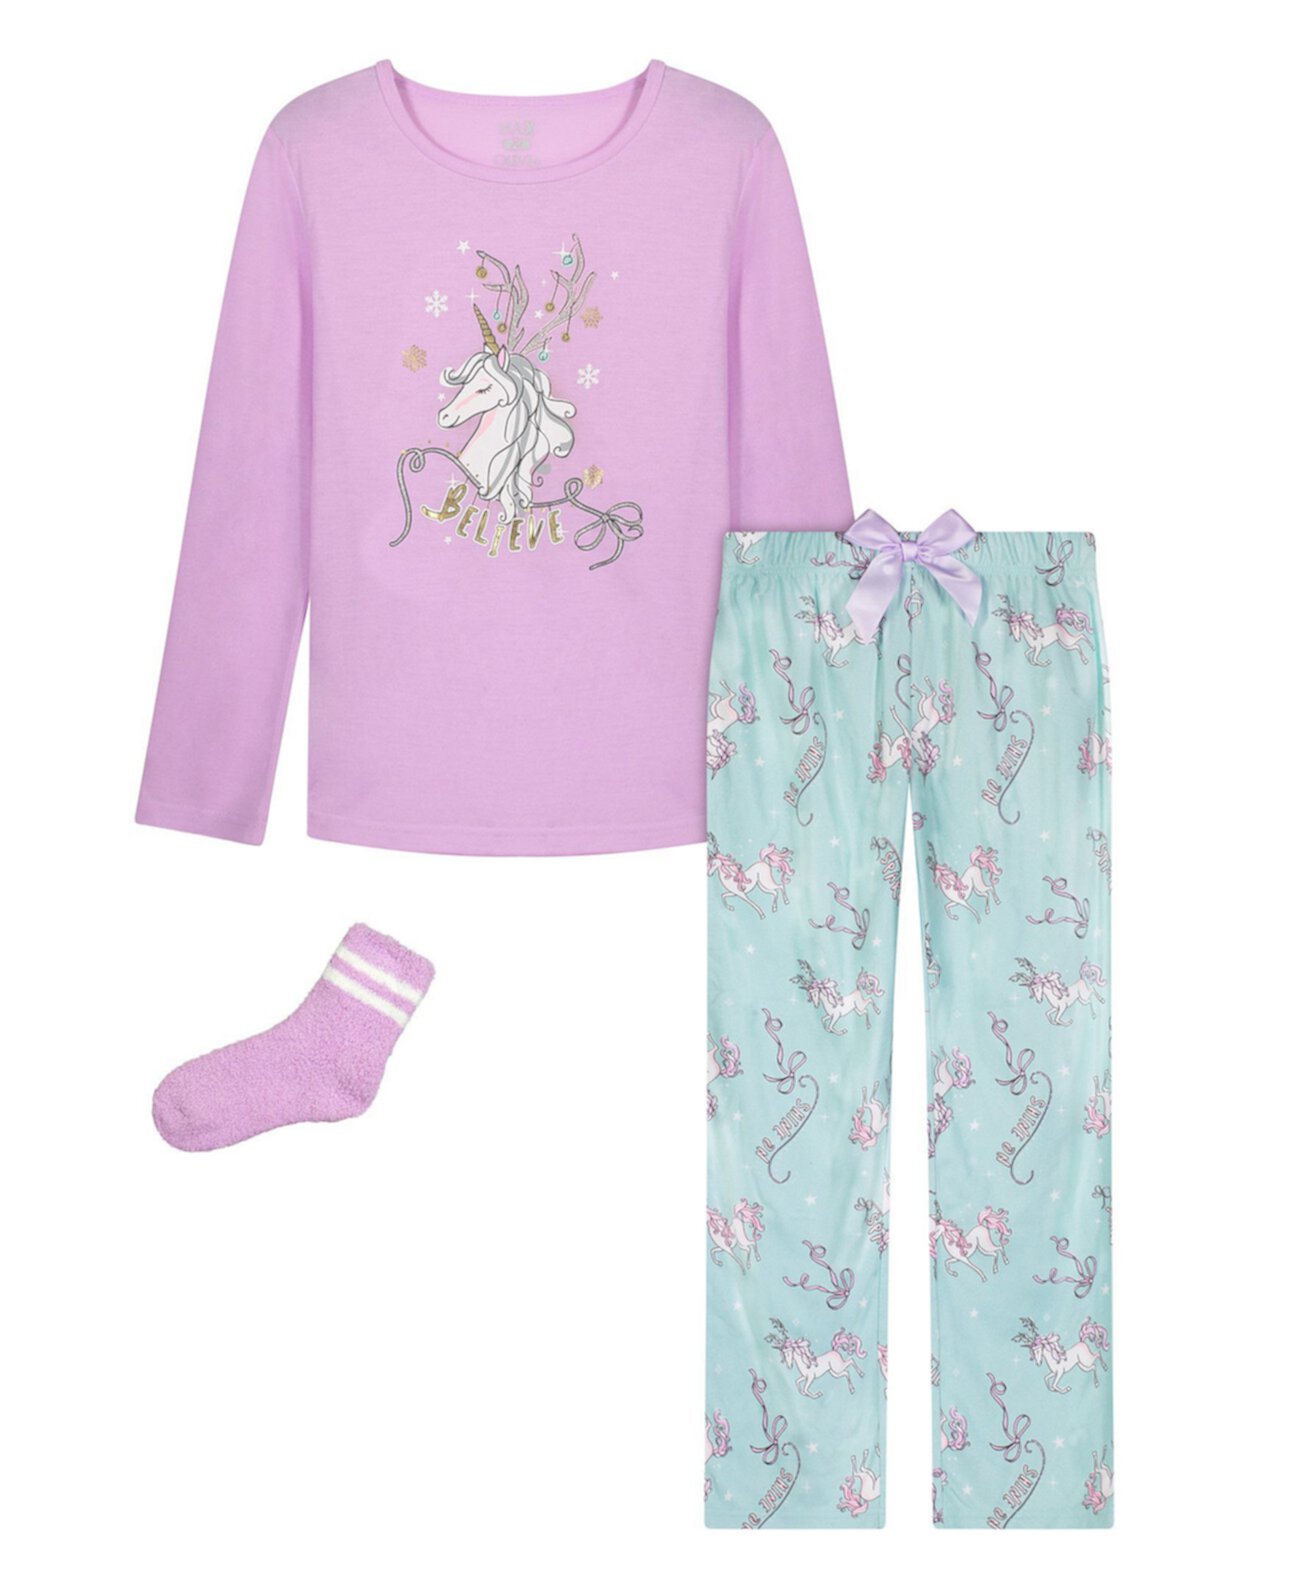 Комплект из топа с единорогом, пижамы и носков Big Girls из 3 предметов Max & Olivia